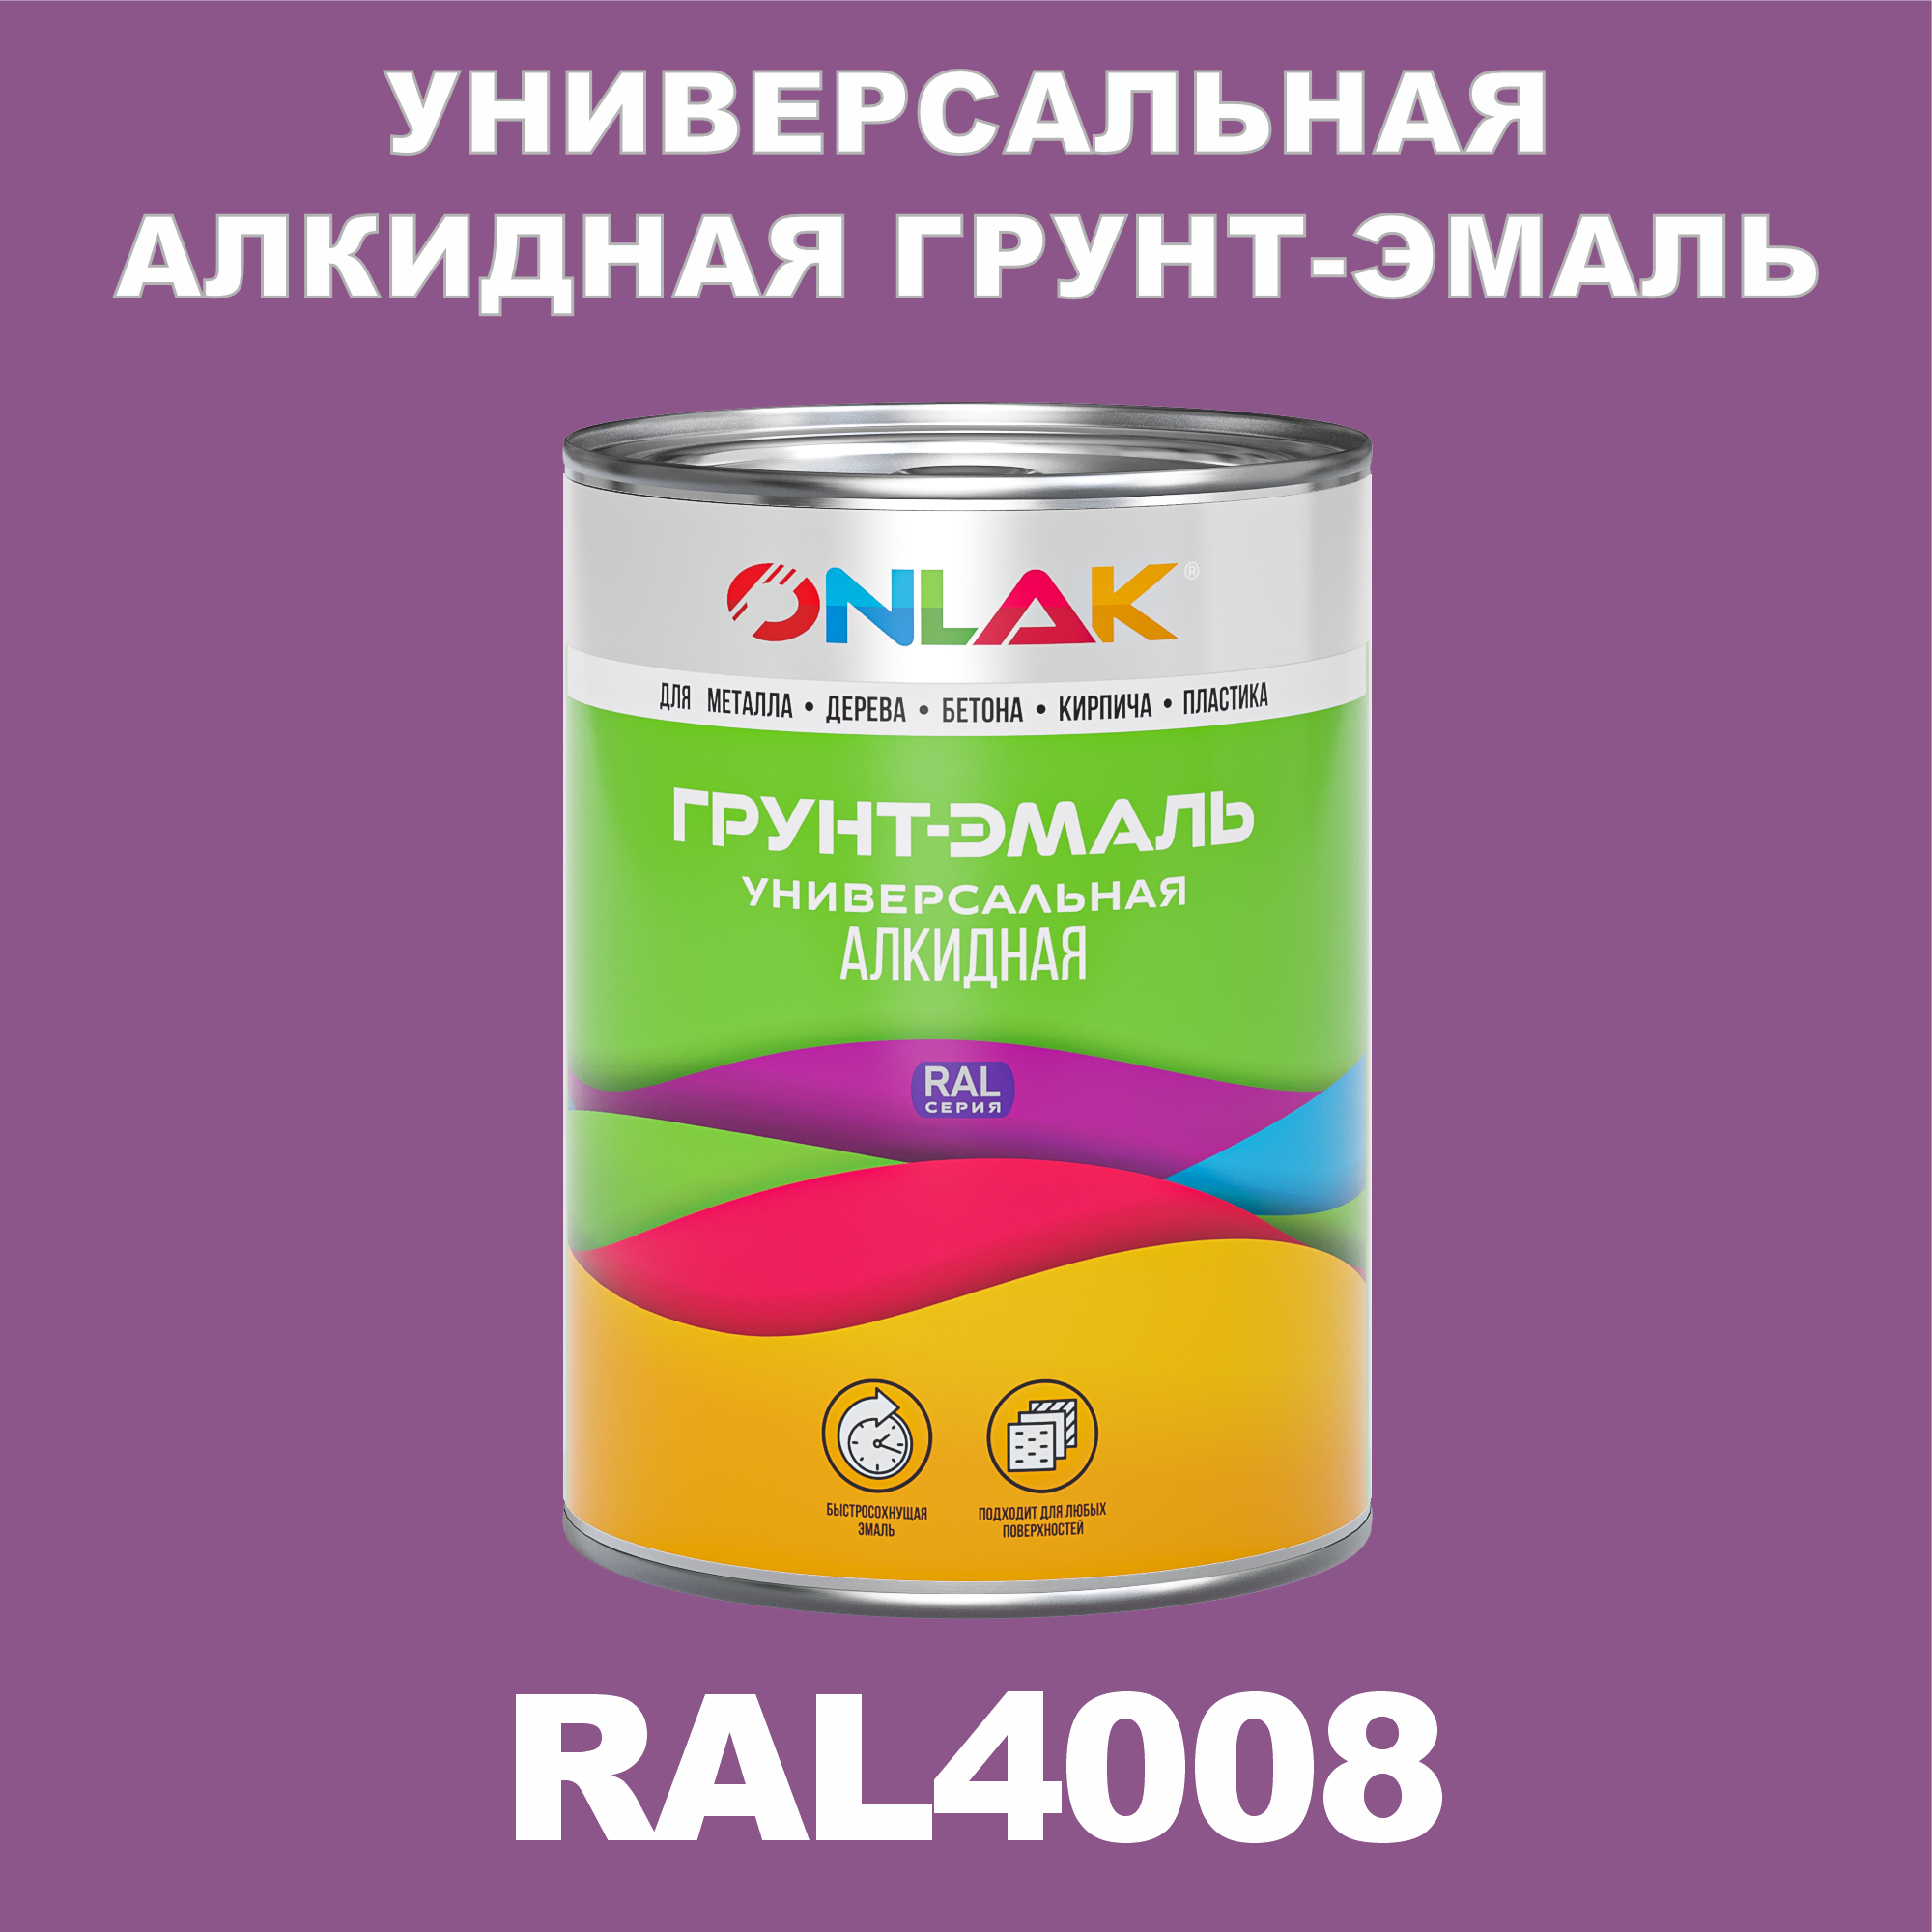 Грунт-эмаль ONLAK 1К RAL4008 антикоррозионная алкидная по металлу по ржавчине 1 кг антикоррозионная грунт эмаль onlak ral 4008 фиолетовый 610 мл